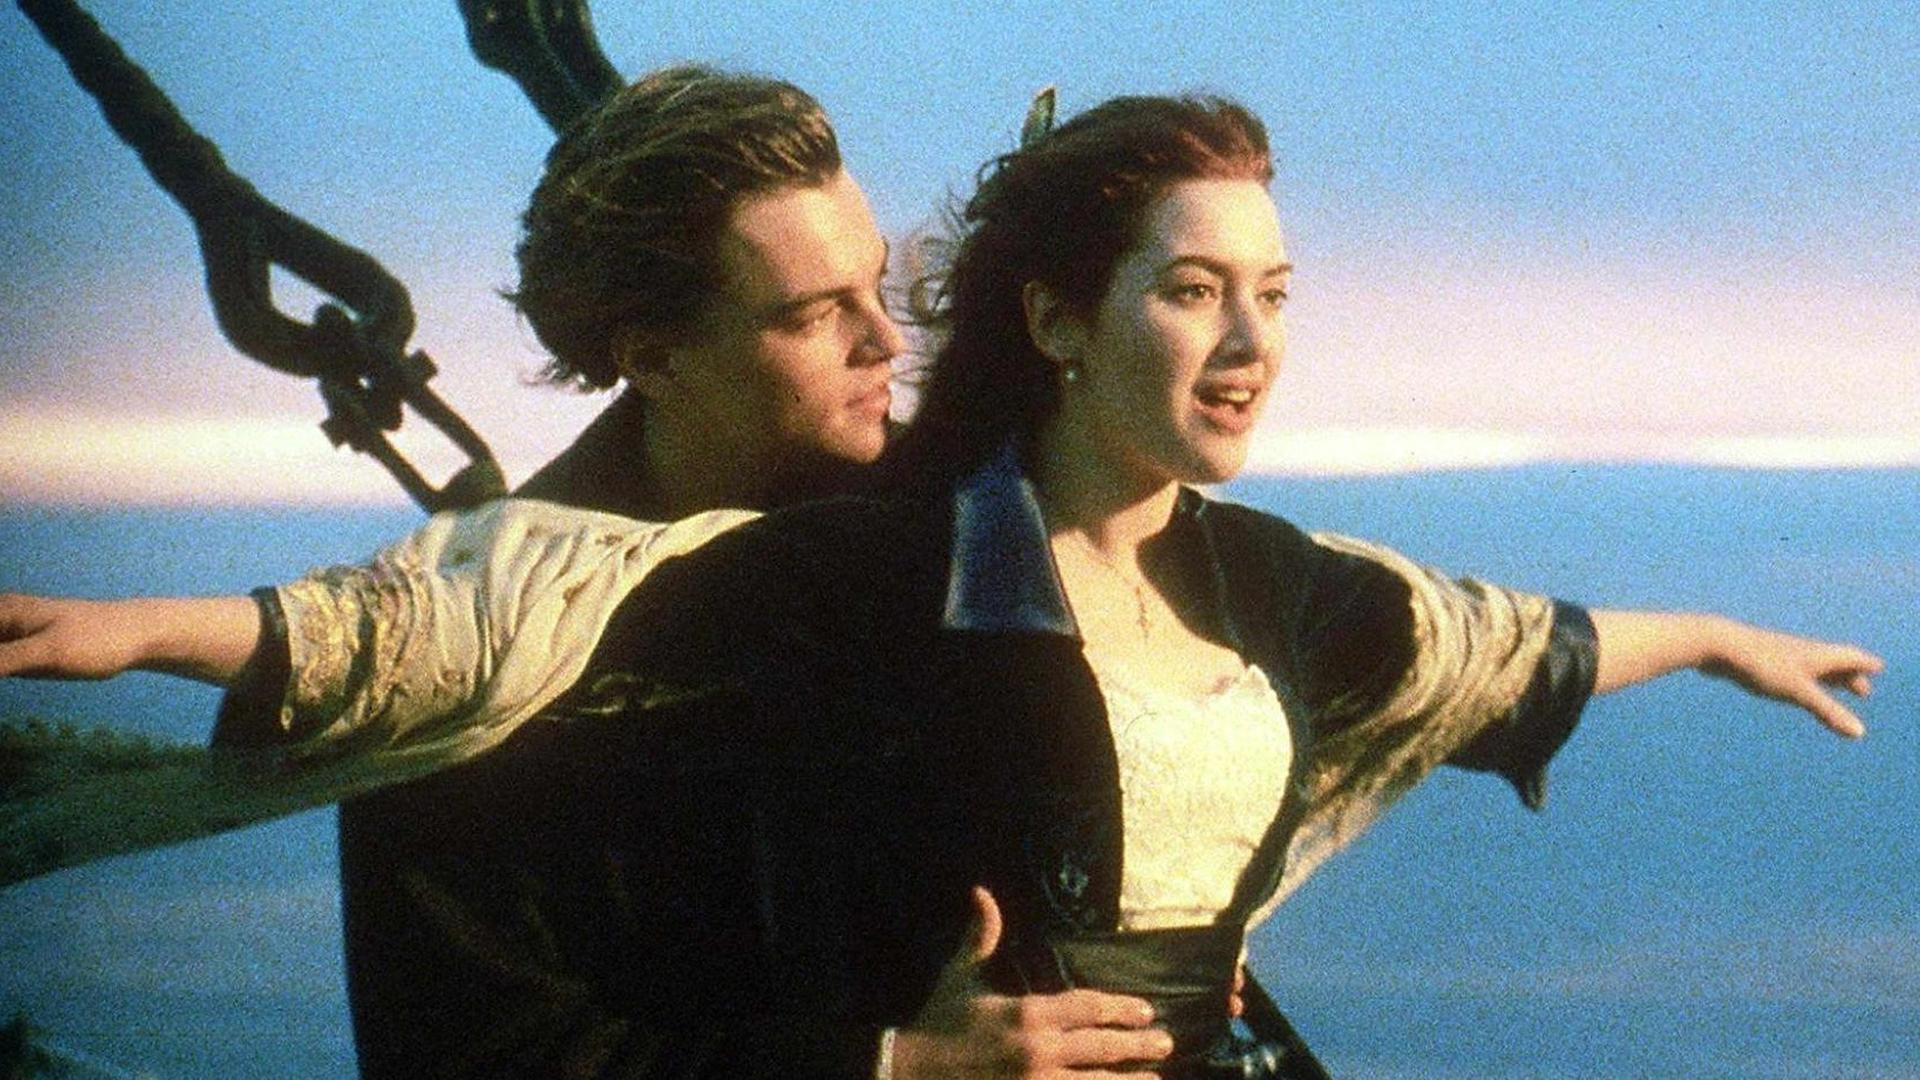 Leonardo DiCaprio und Kate Winslet in dem legendären Liebesfilm "Titanic".